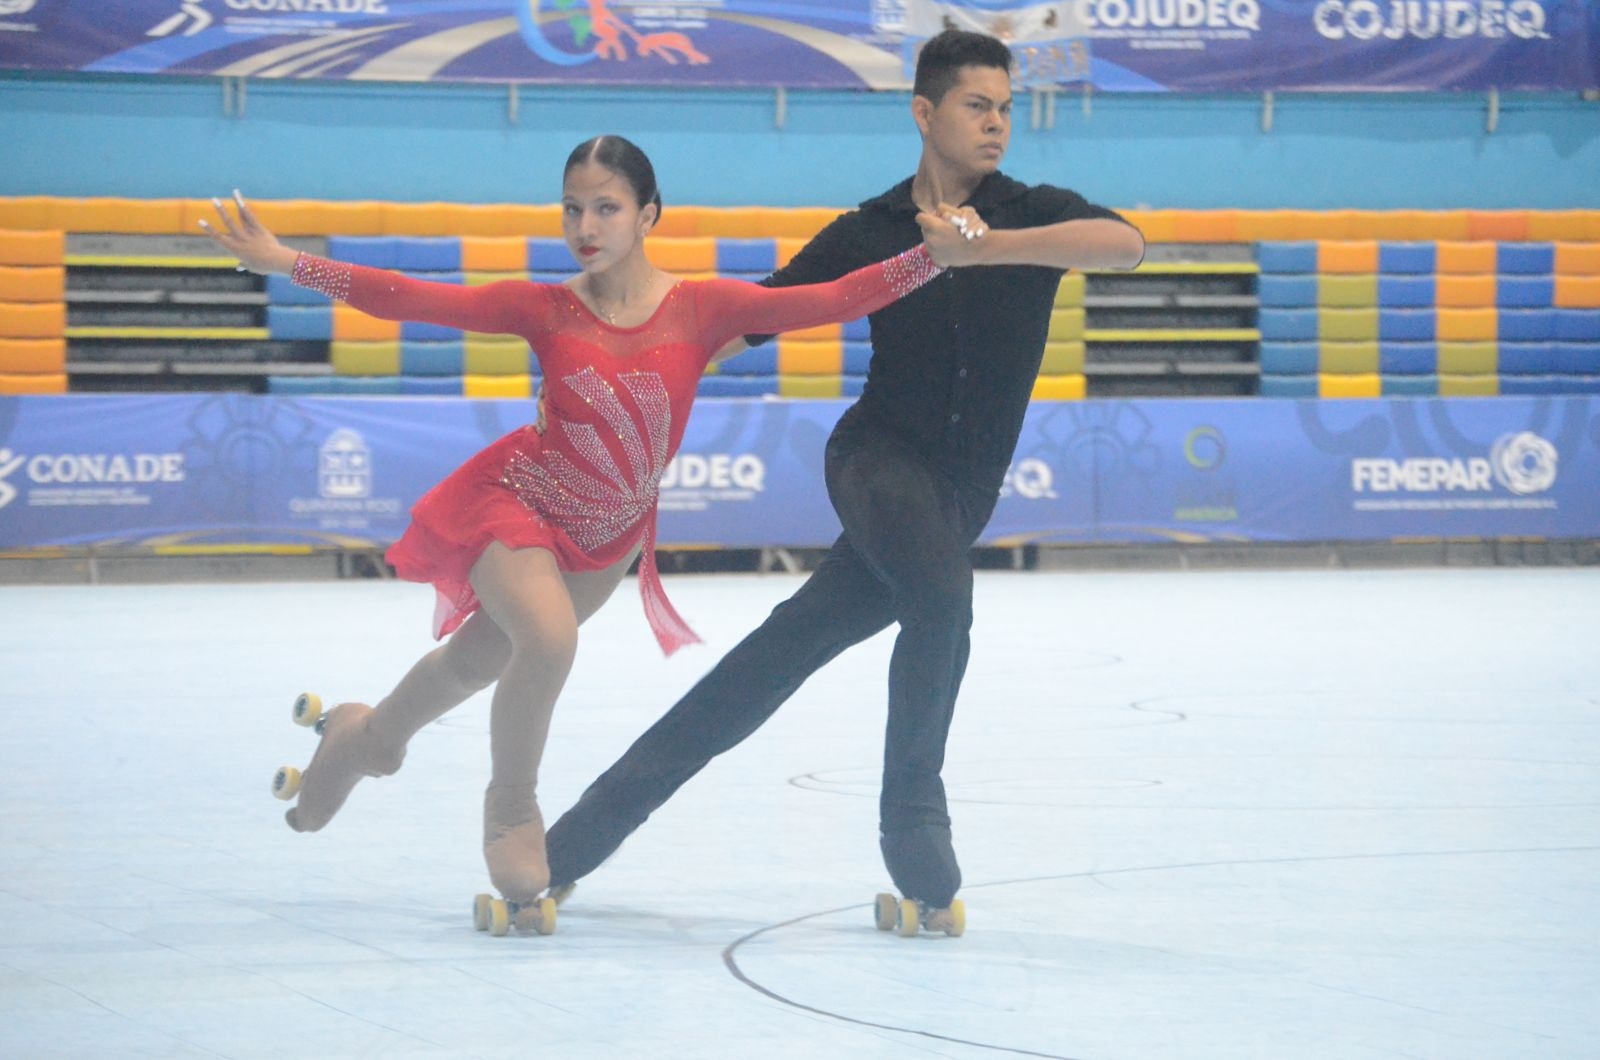 Parejas de patinaje artístico buscan boleto para los Juegos Centroamericanos en el Salvador